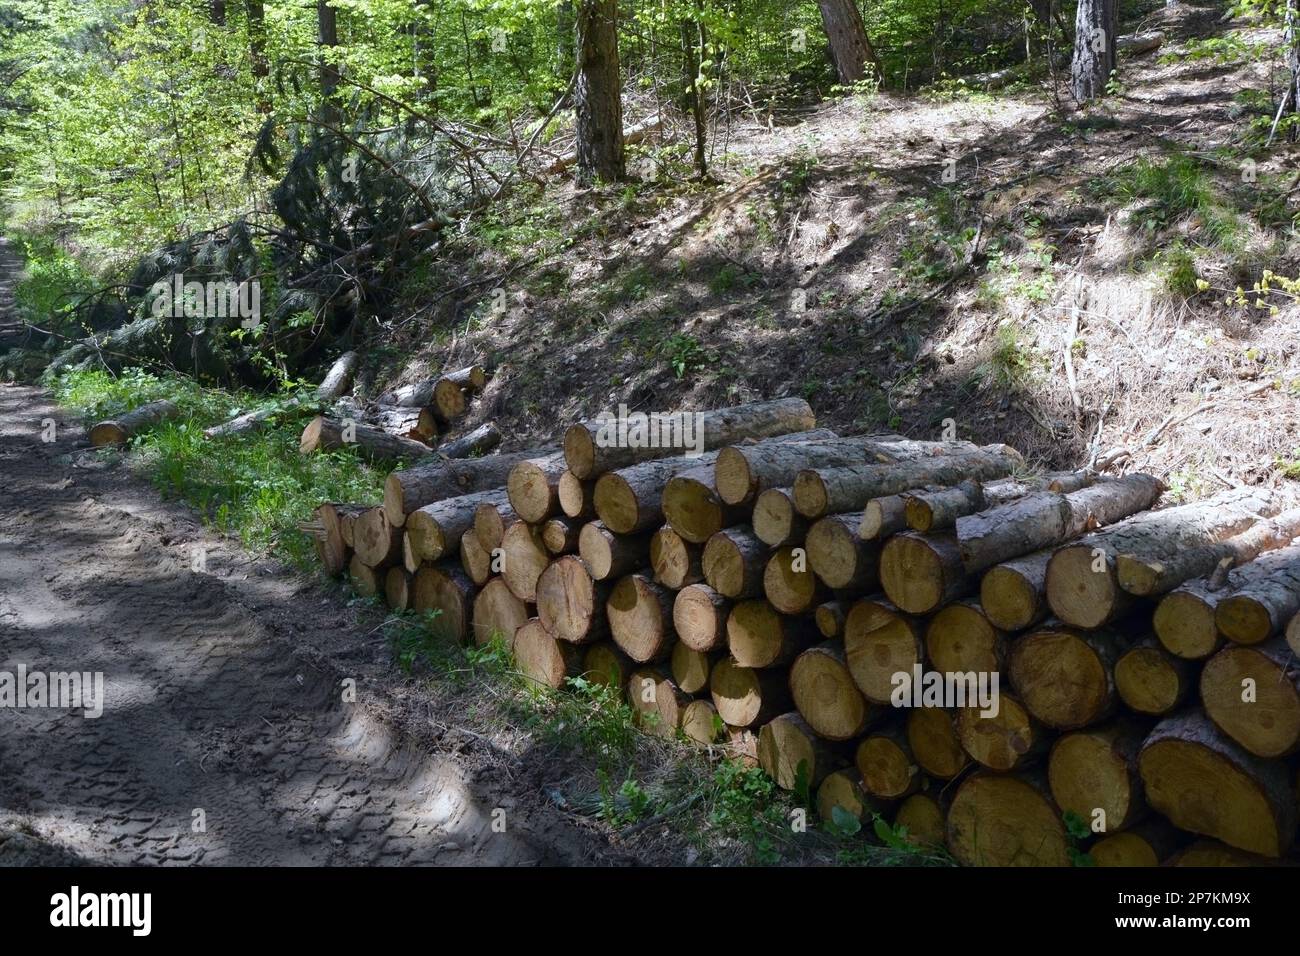 Un mucchio di tronchi tagliati di alberi con gli anelli dell'albero che mostrano accatastati all'aperto vicino ad una strada sterrata nella foresta. Immagine orizzontale con spazio di copia Foto Stock